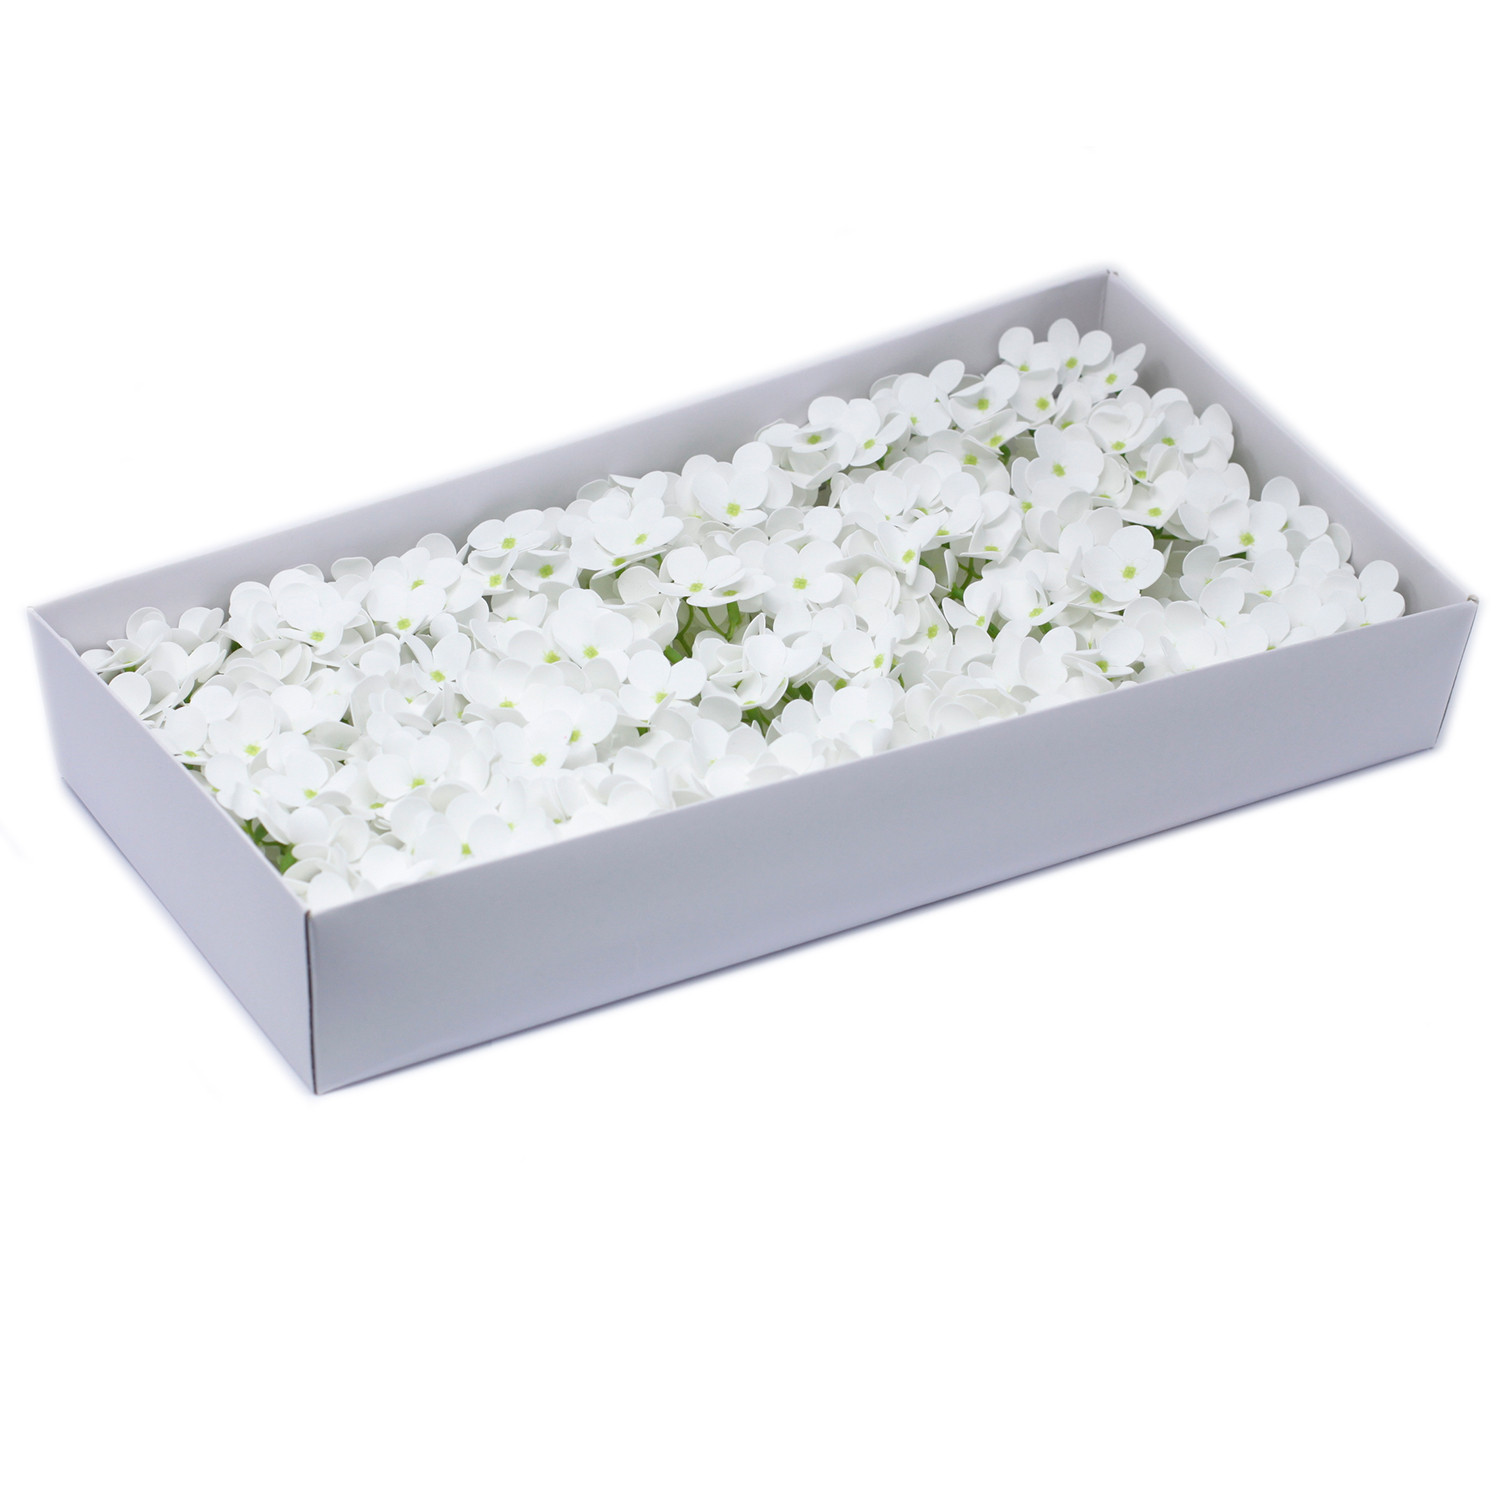 Mýdlové květy - Hyacint - Bílý (36 ks)